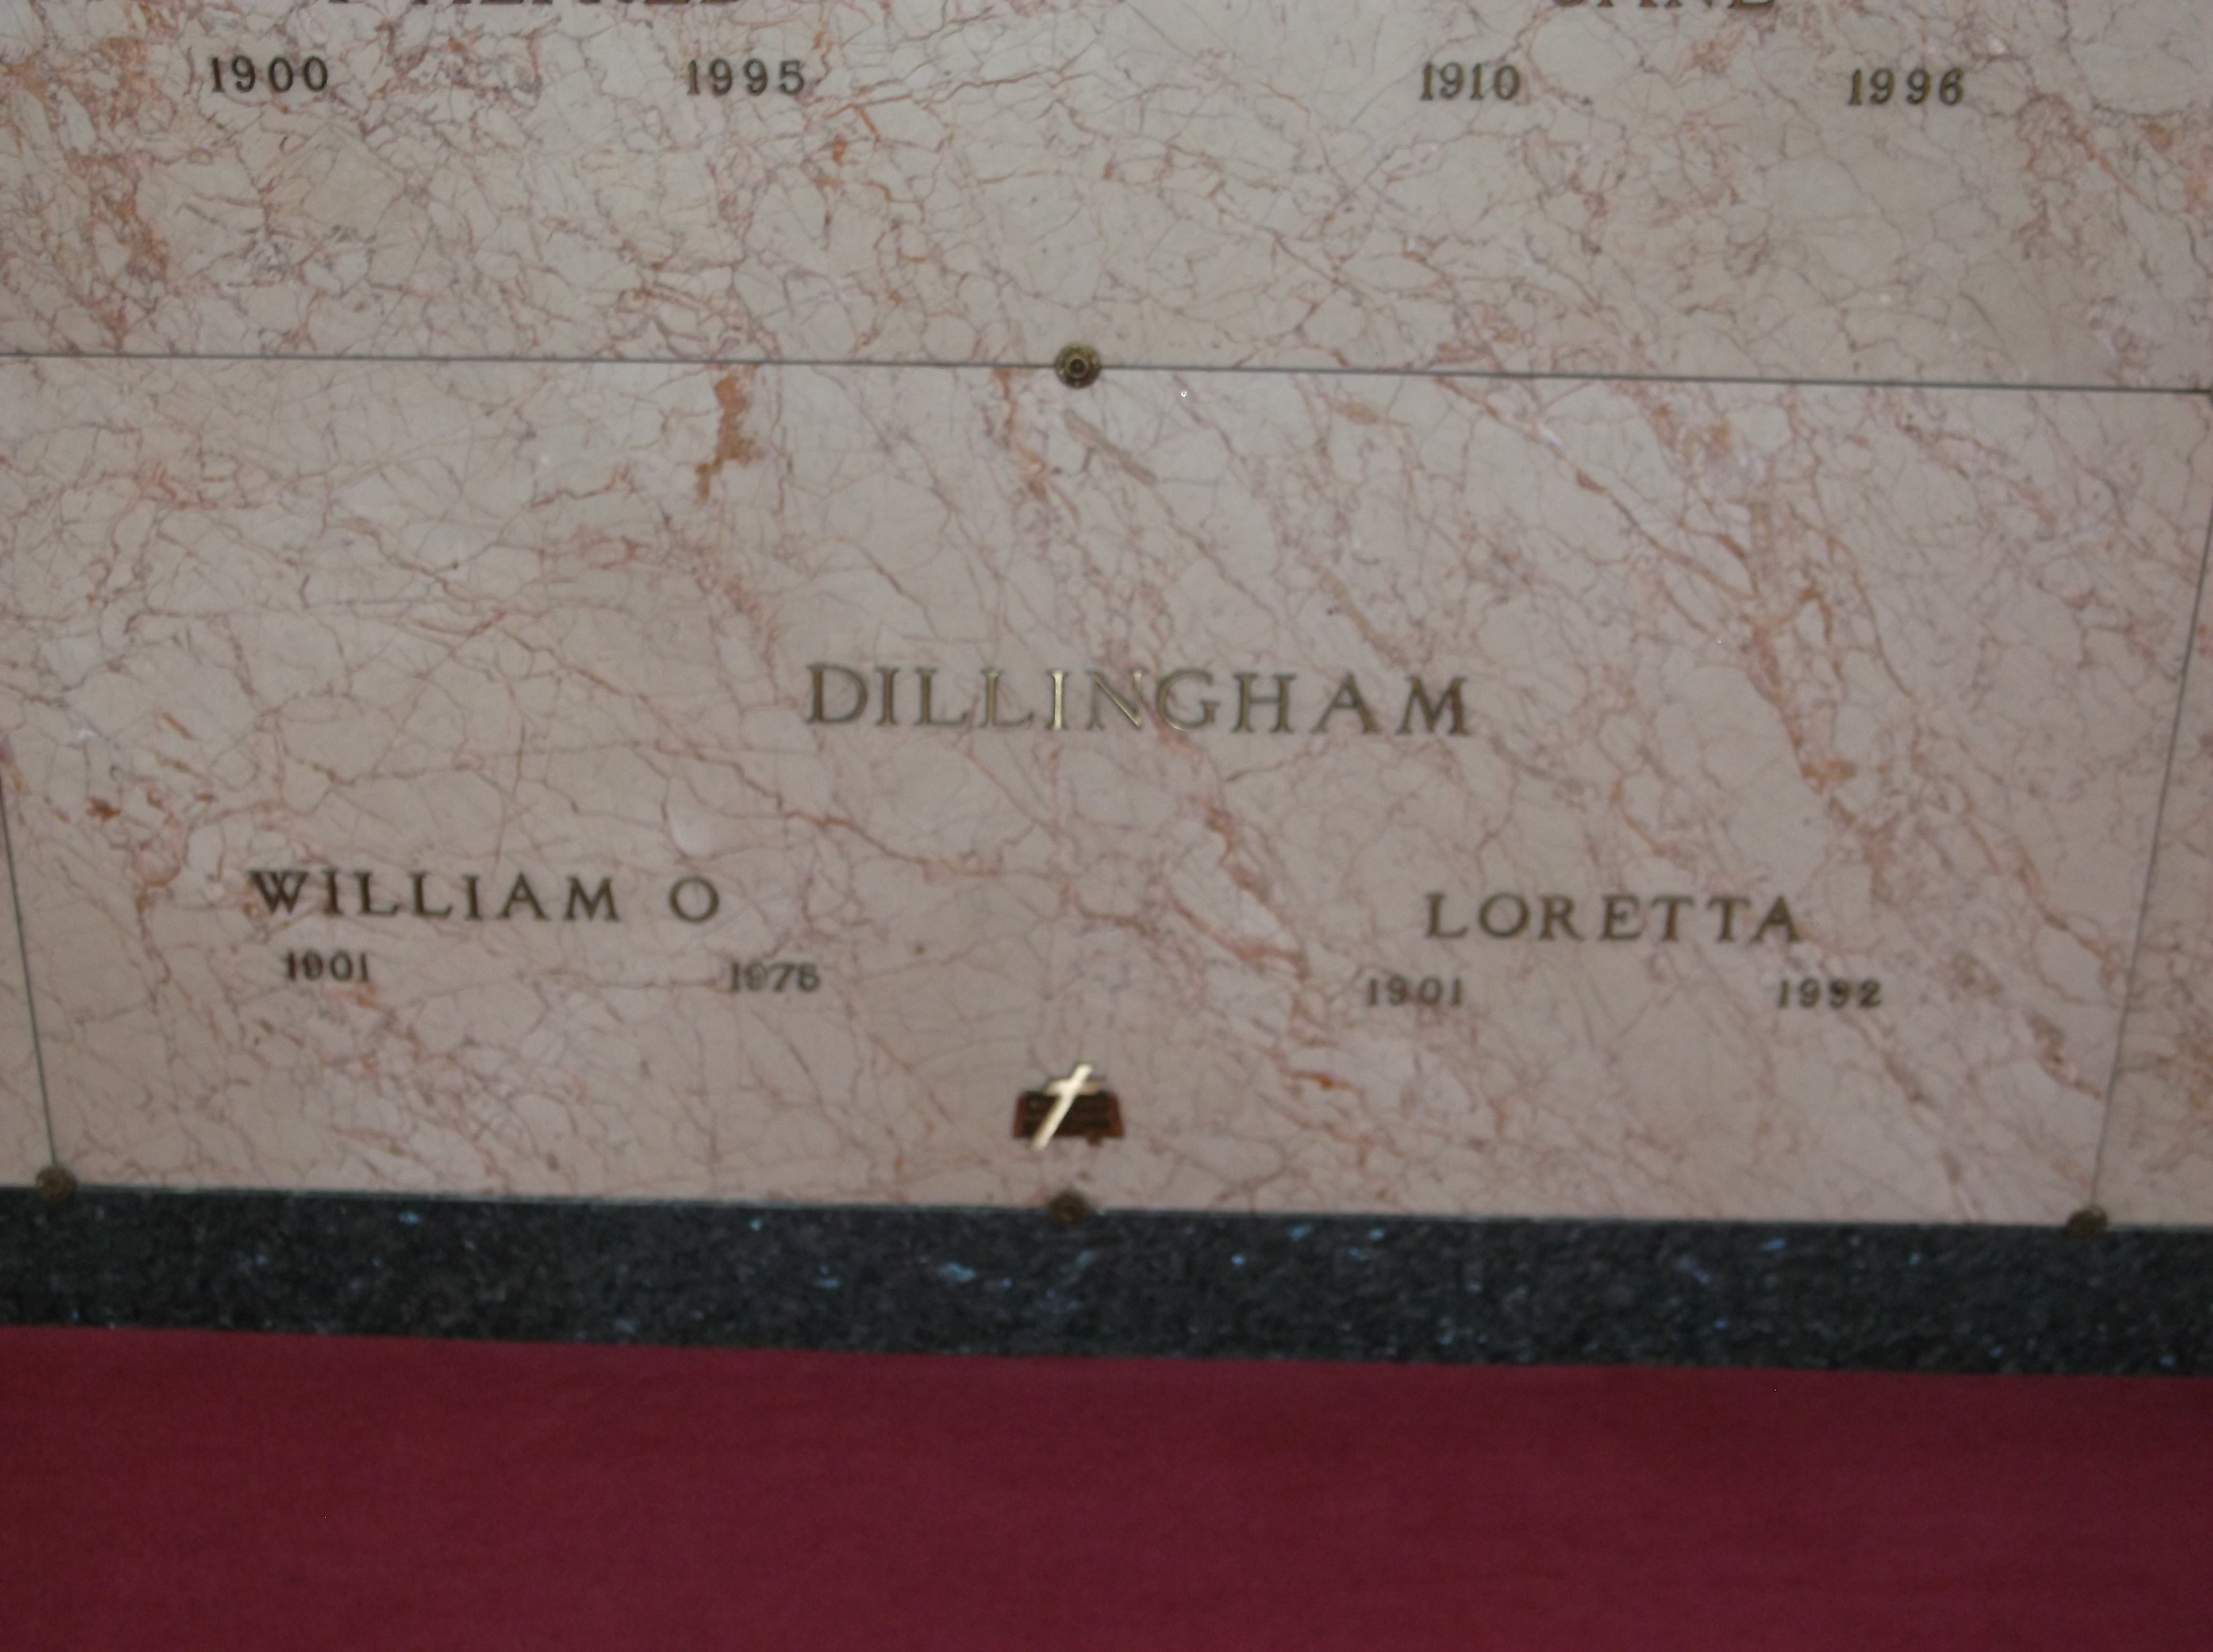 William O Dillingham